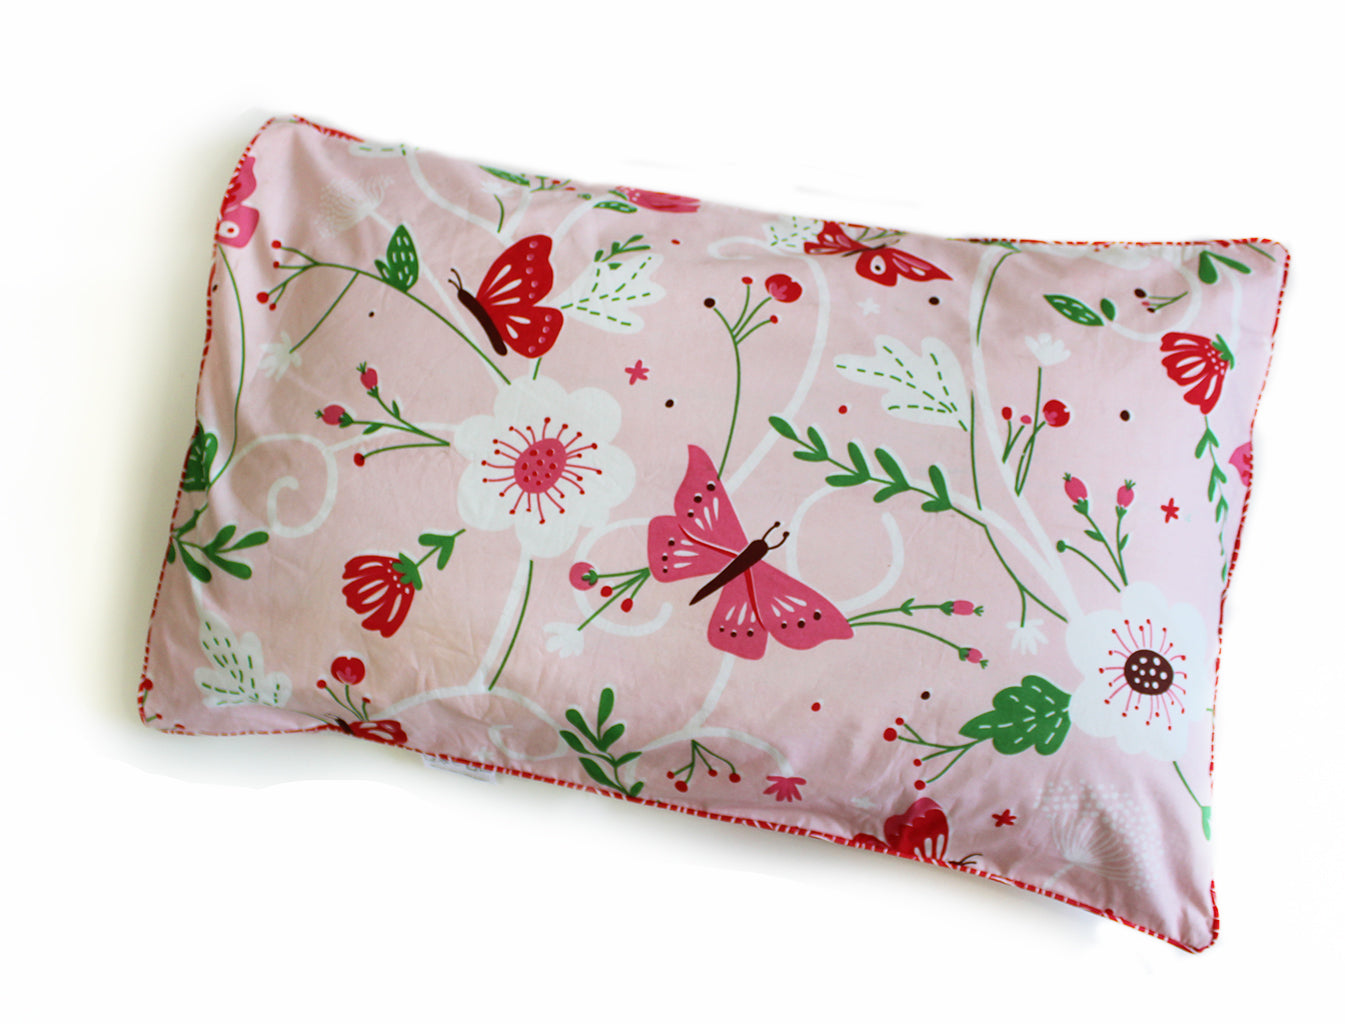 Flowers & Butterflies Single Pillow Cover